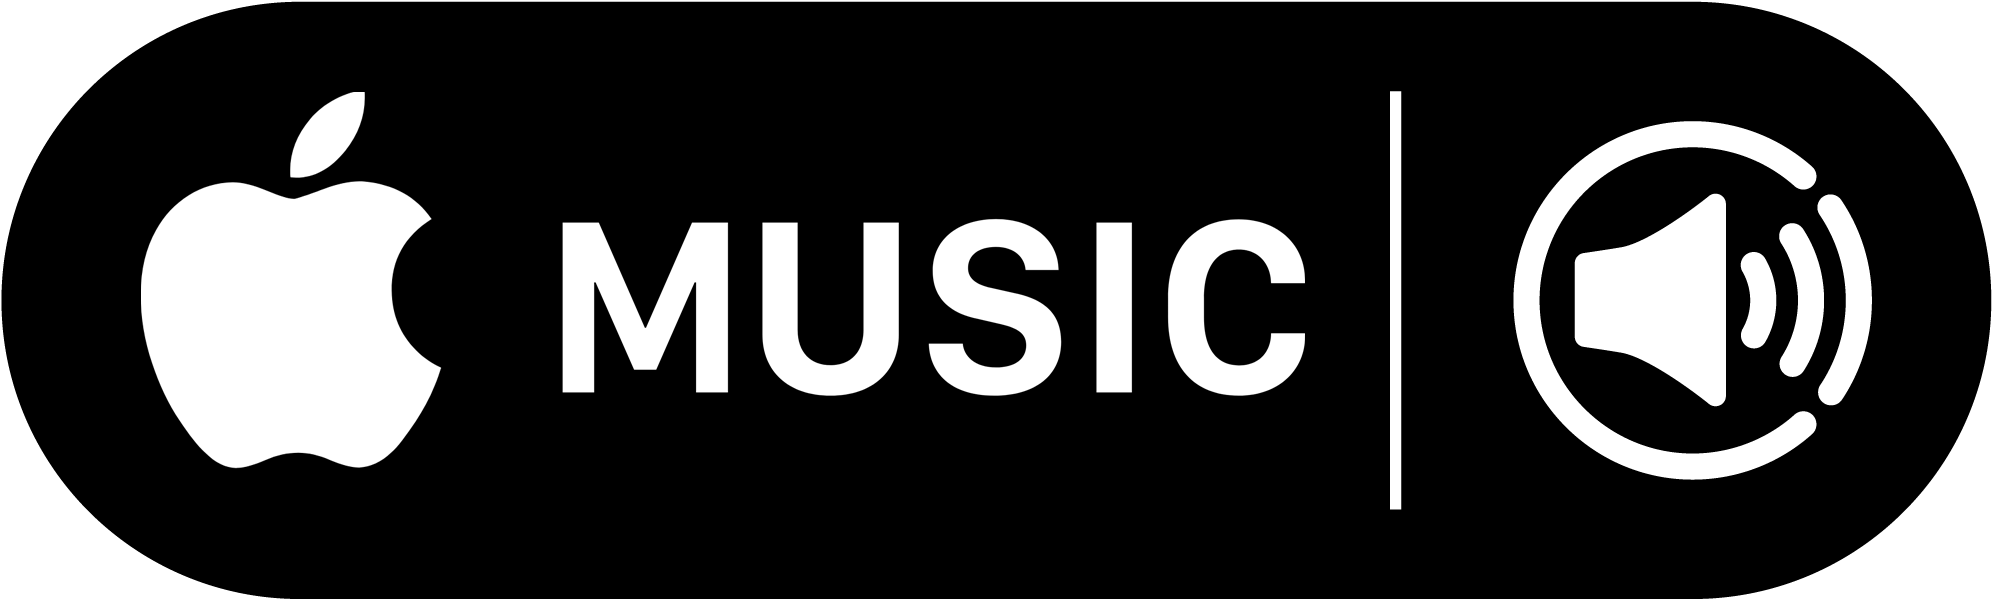 Apple Music Apple Music Logo App Stock Vector (Royalty Free) 2303795129 |  Shutterstock